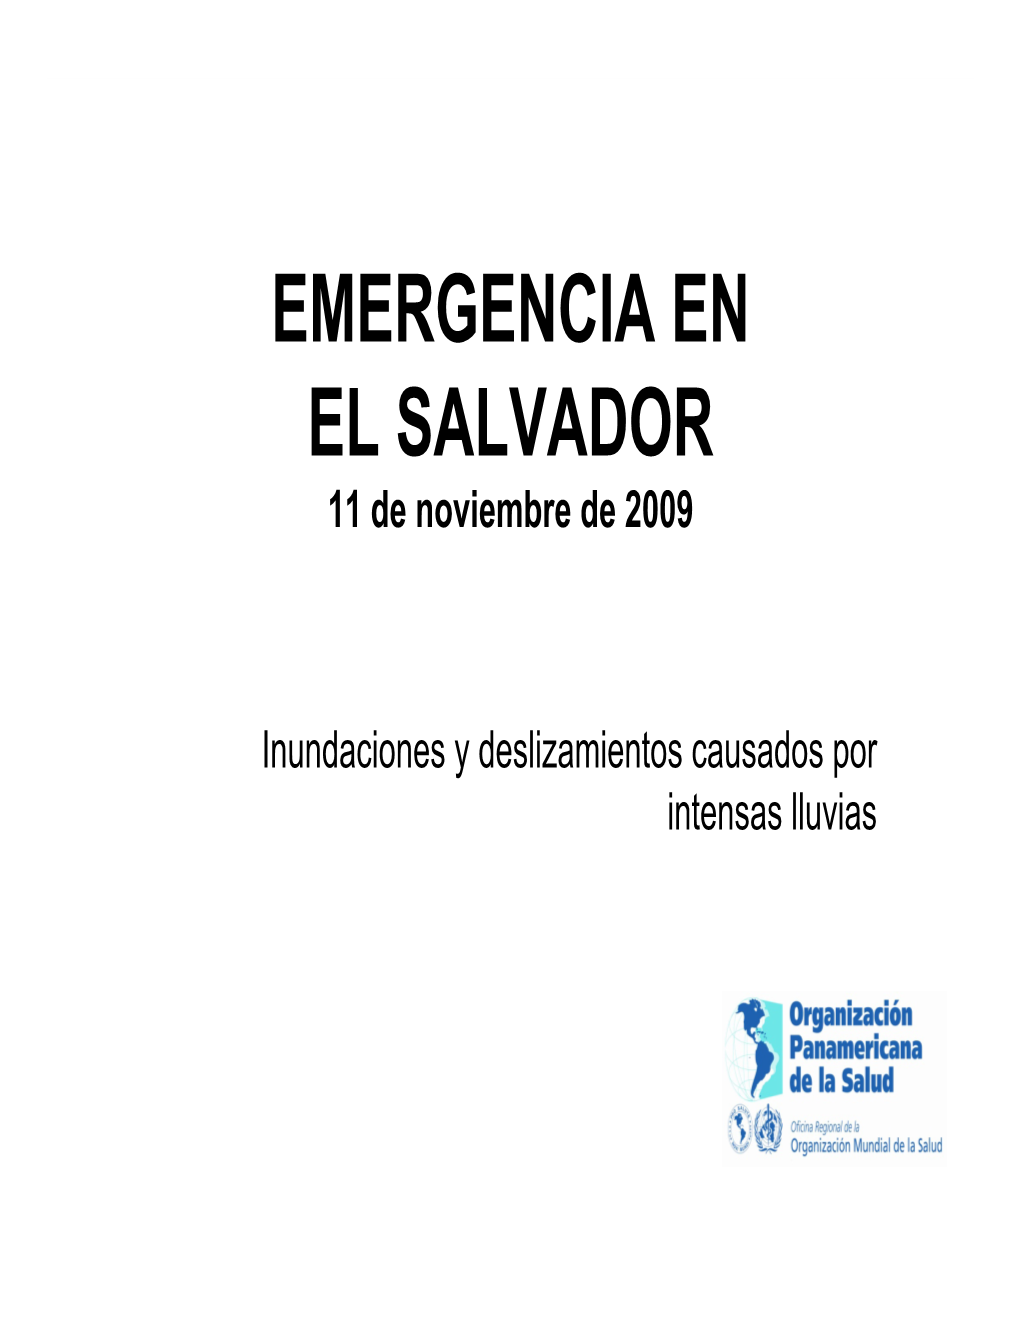 EMERGENCIA EN EL SALVADOR 11 De Noviembre De 2009